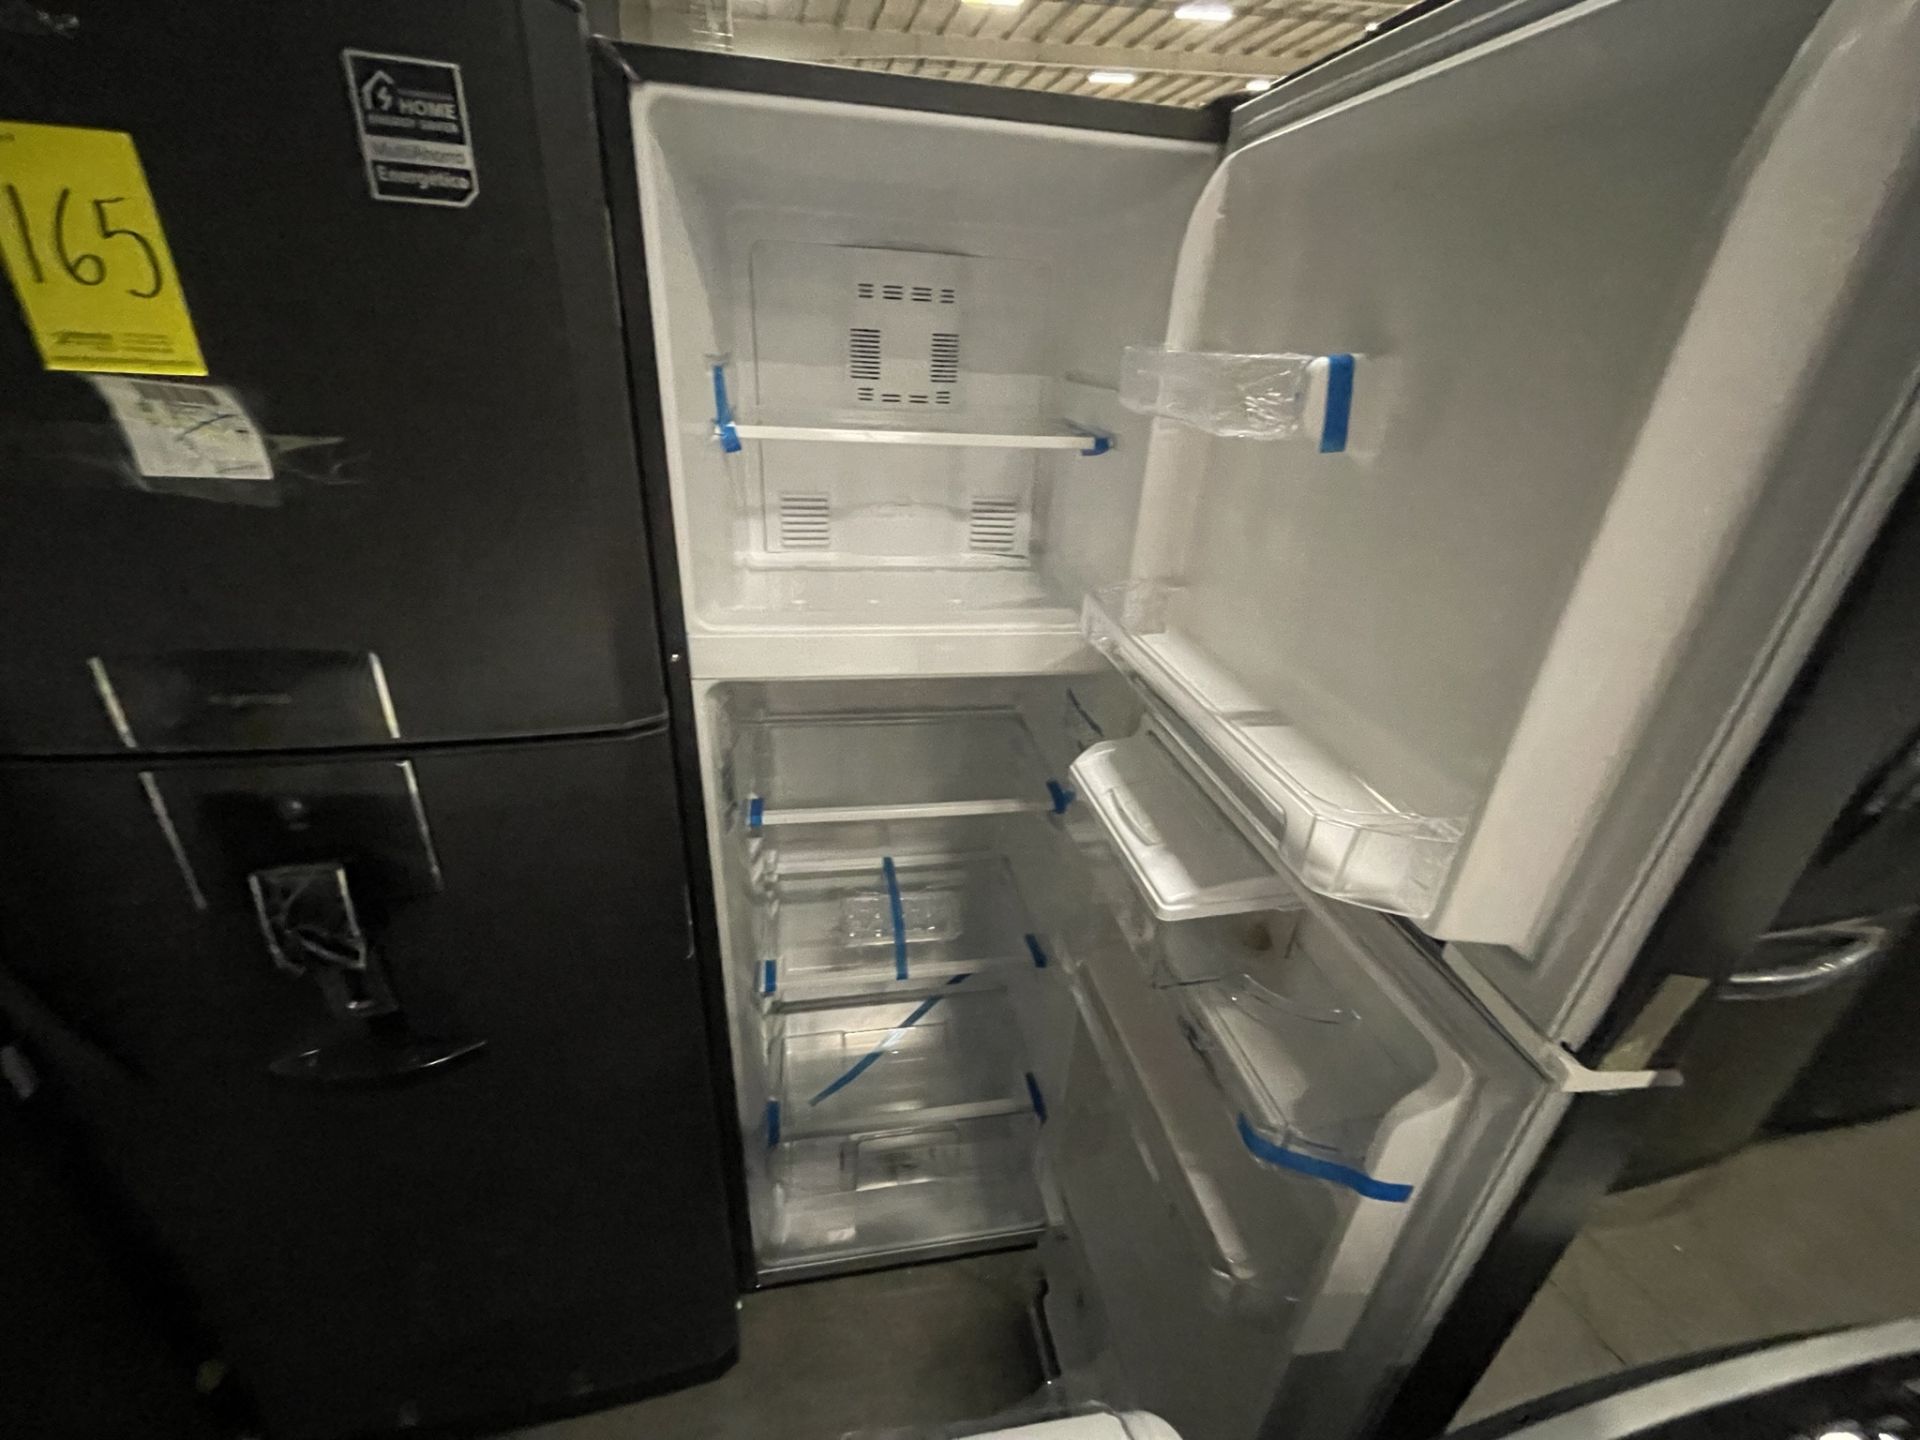 (EQUIPO NUEVO) 1 Refrigerador Con Dispensador De Agua Marca MABE, Modelo RMA300FJMRDA, Serie 2210B7 - Image 3 of 4